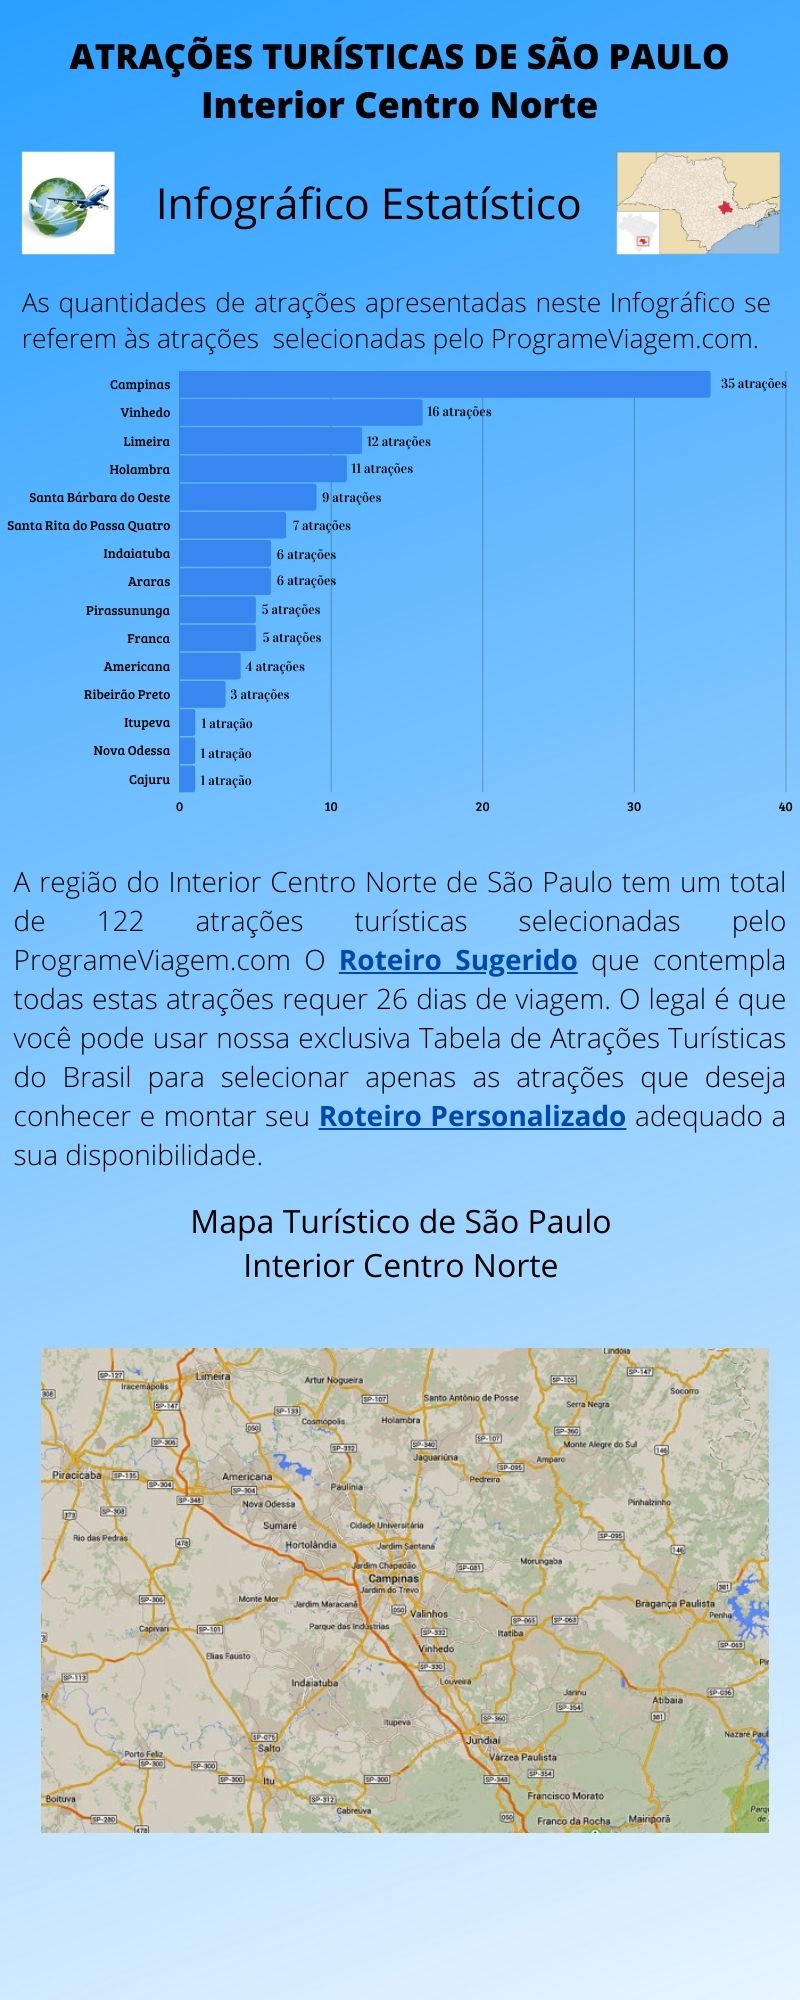 Infográfico Atrações Turísticas de São Paulo (Interior Centro Norte)